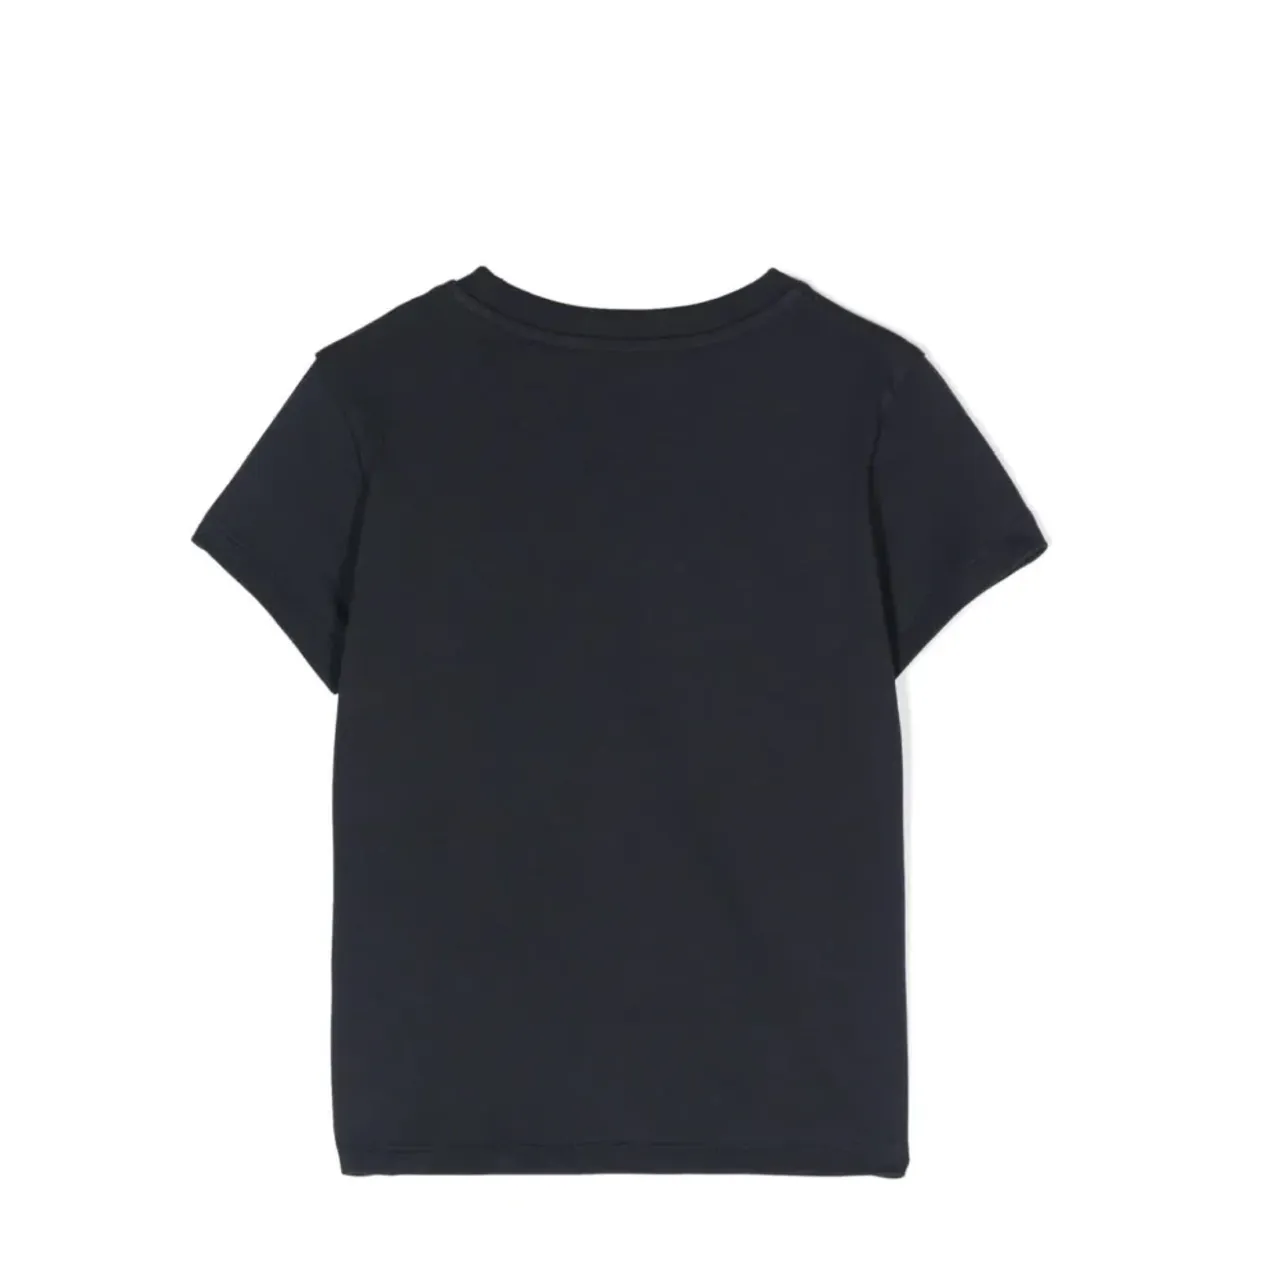 Moncler , Casual T-Shirt ,Blue unisex, Sizes: